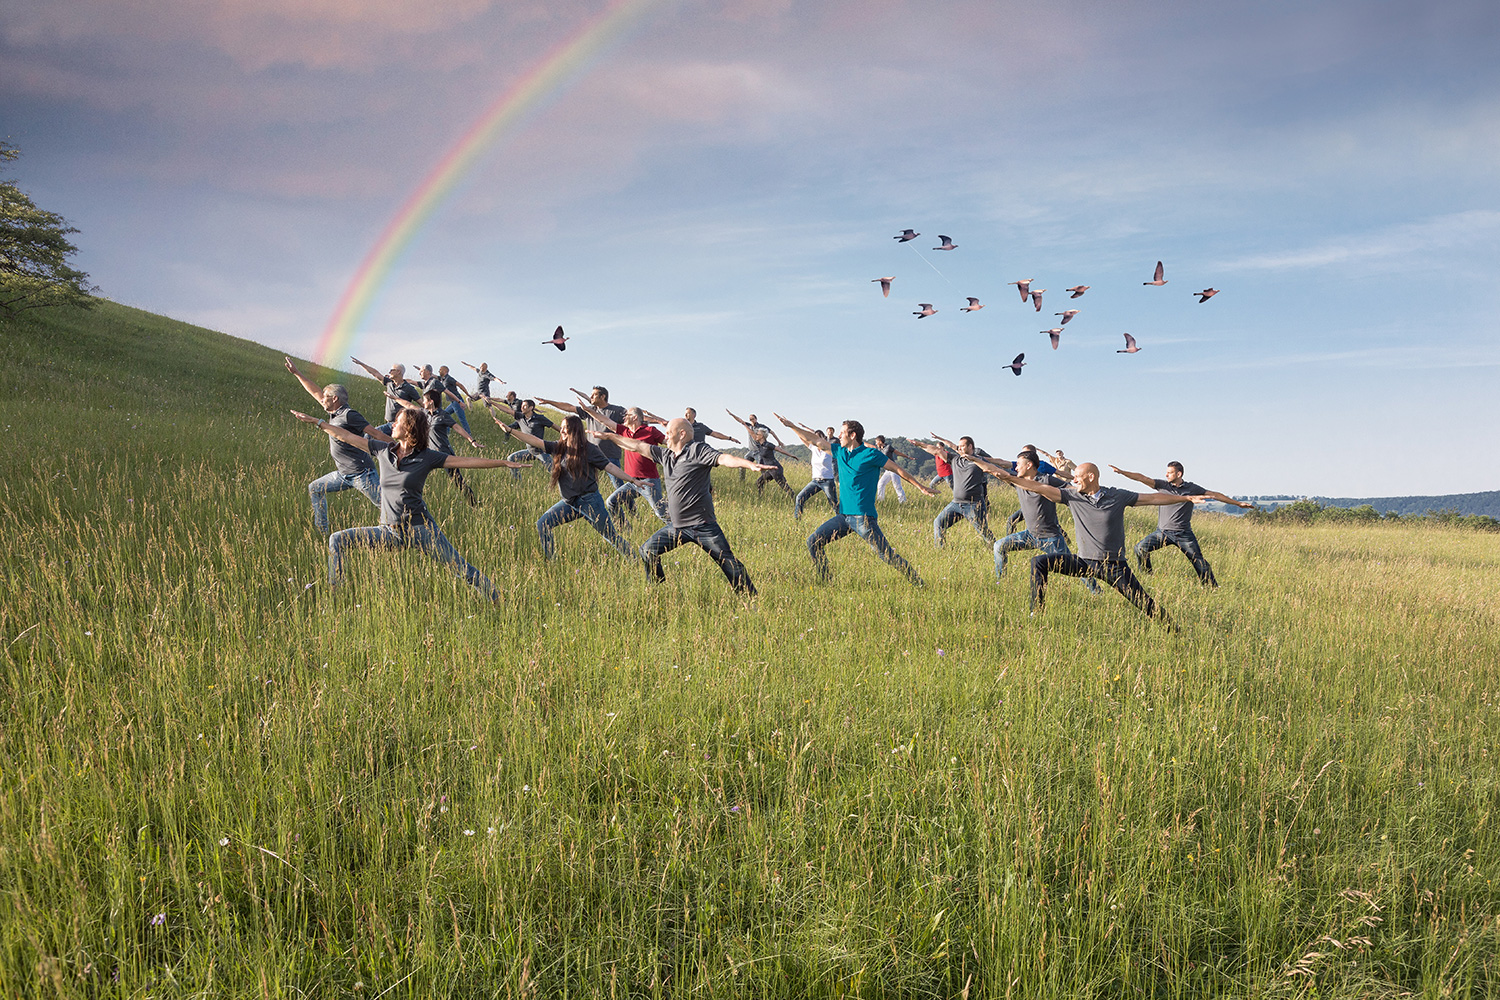 L'équipe du MBA dans une pose méditative dans la nature avec un arc-en-ciel dans le ciel